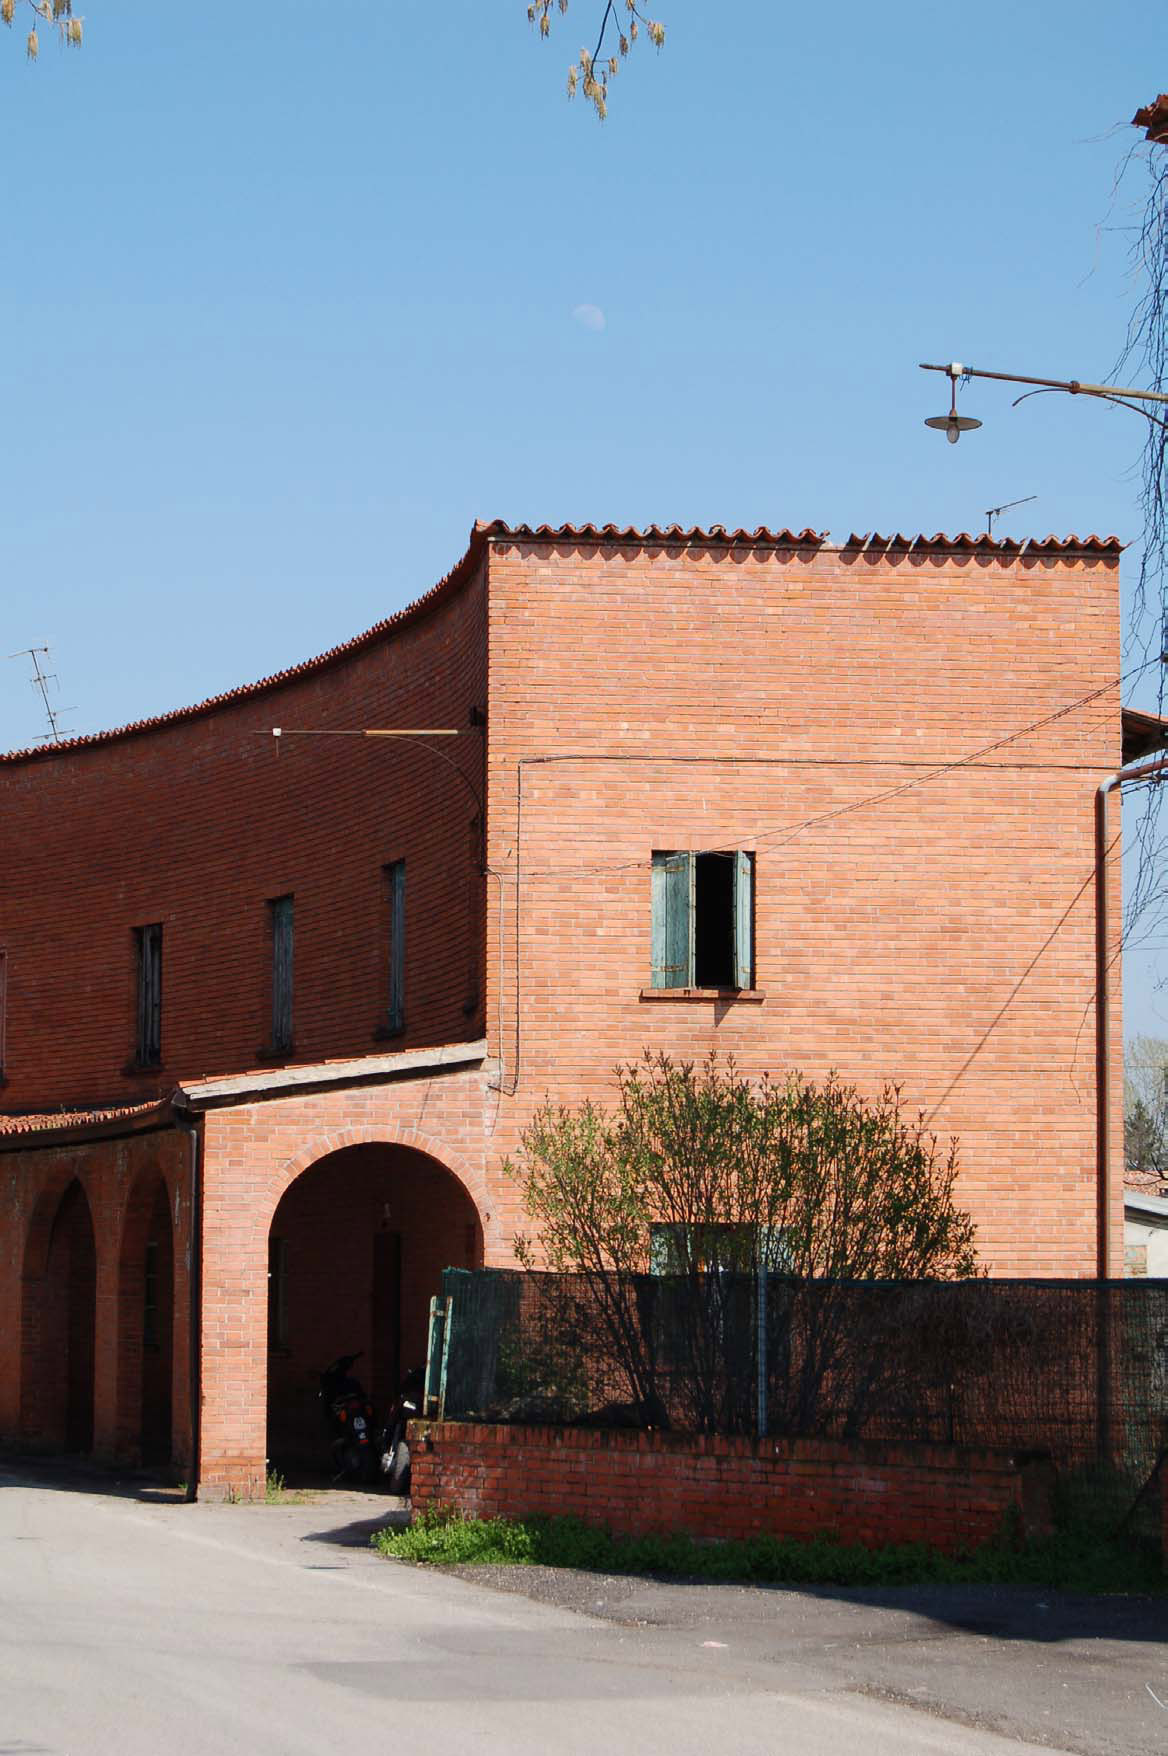 Casa 5 - Borgo Rurale Fratelli Grinzato (casa) - Vigonza (PD) 